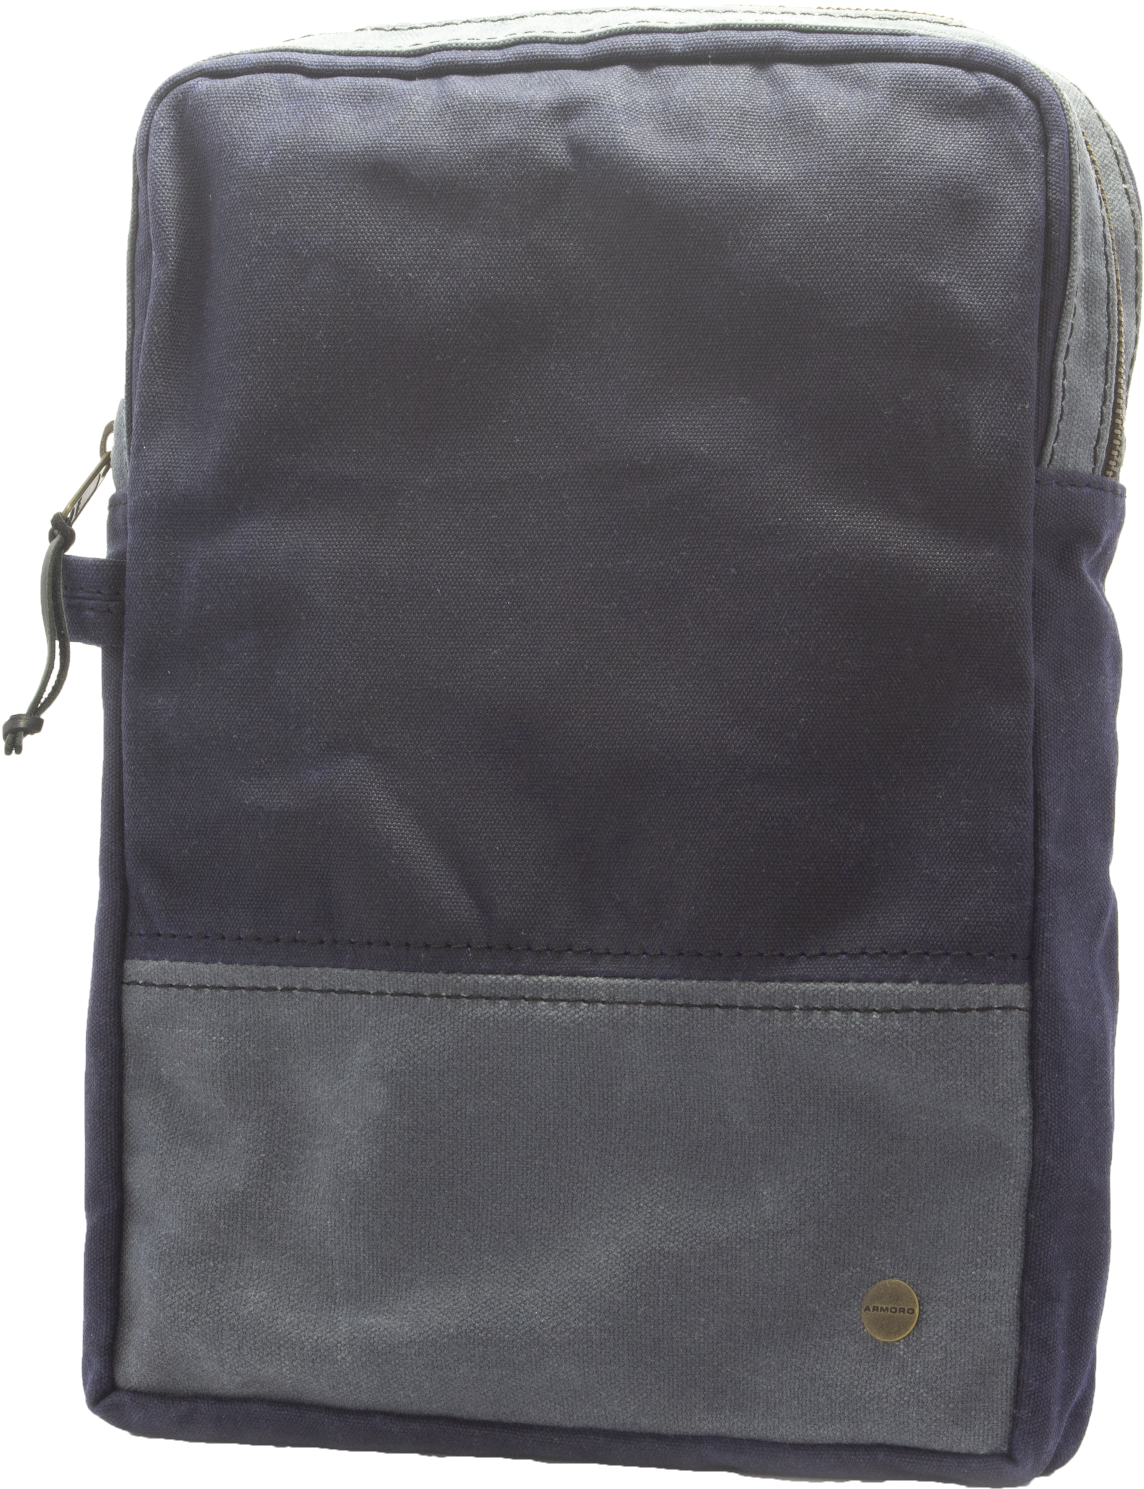 armoro canvas laptop bag